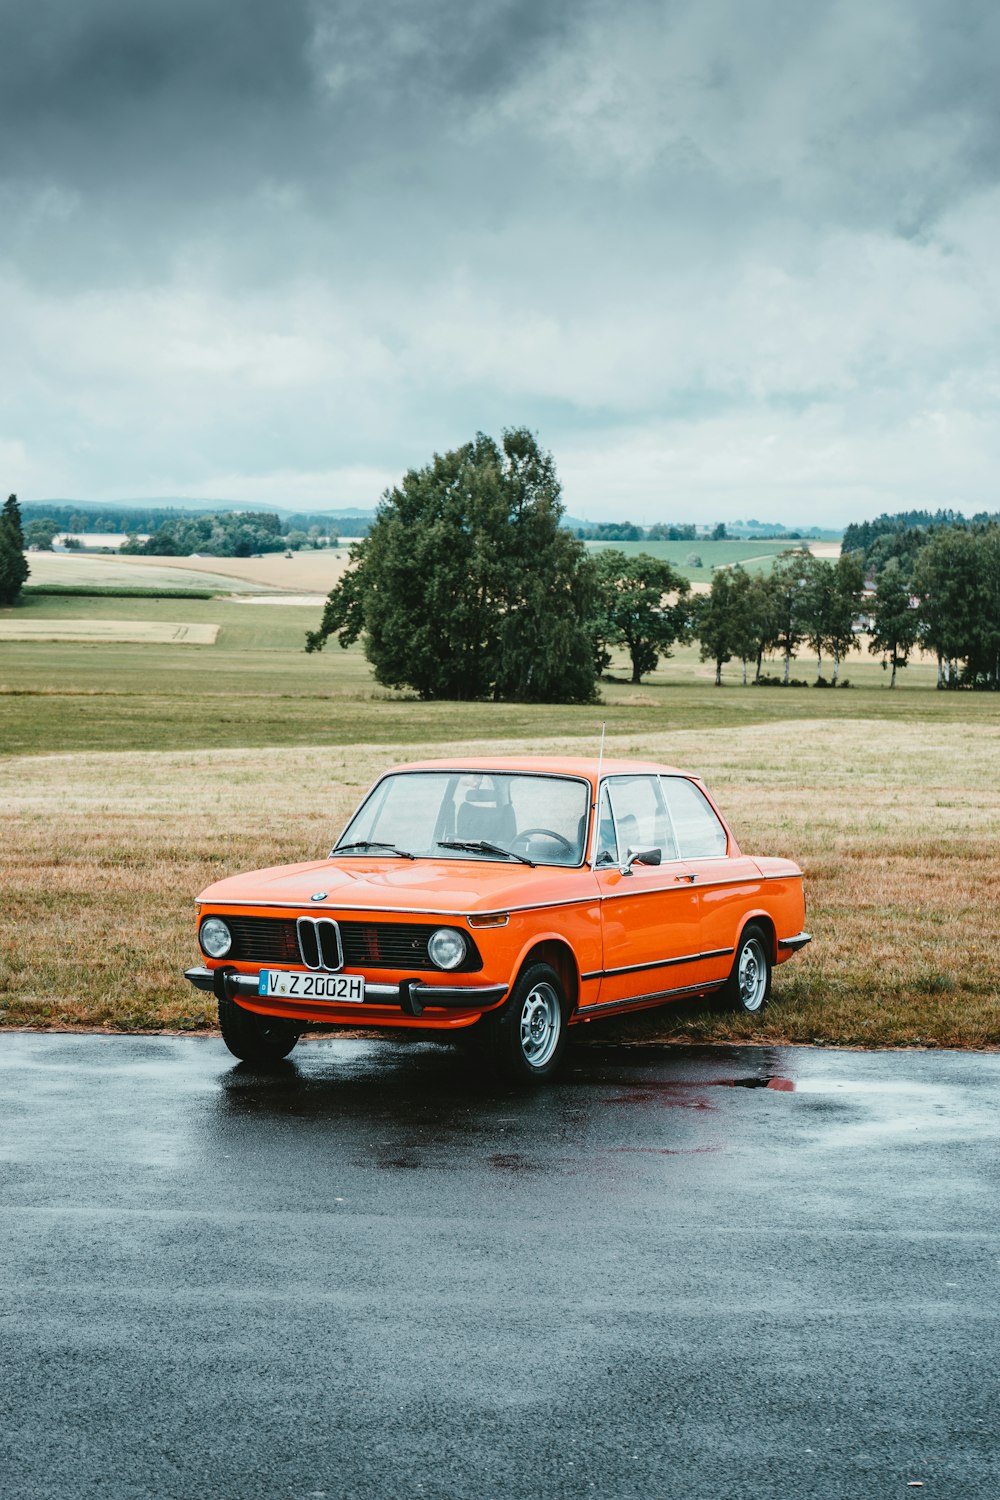 orangefarbenes klassisches BMW Coupé unter grauem Wolkenhimmel am Straßenrand geparkt